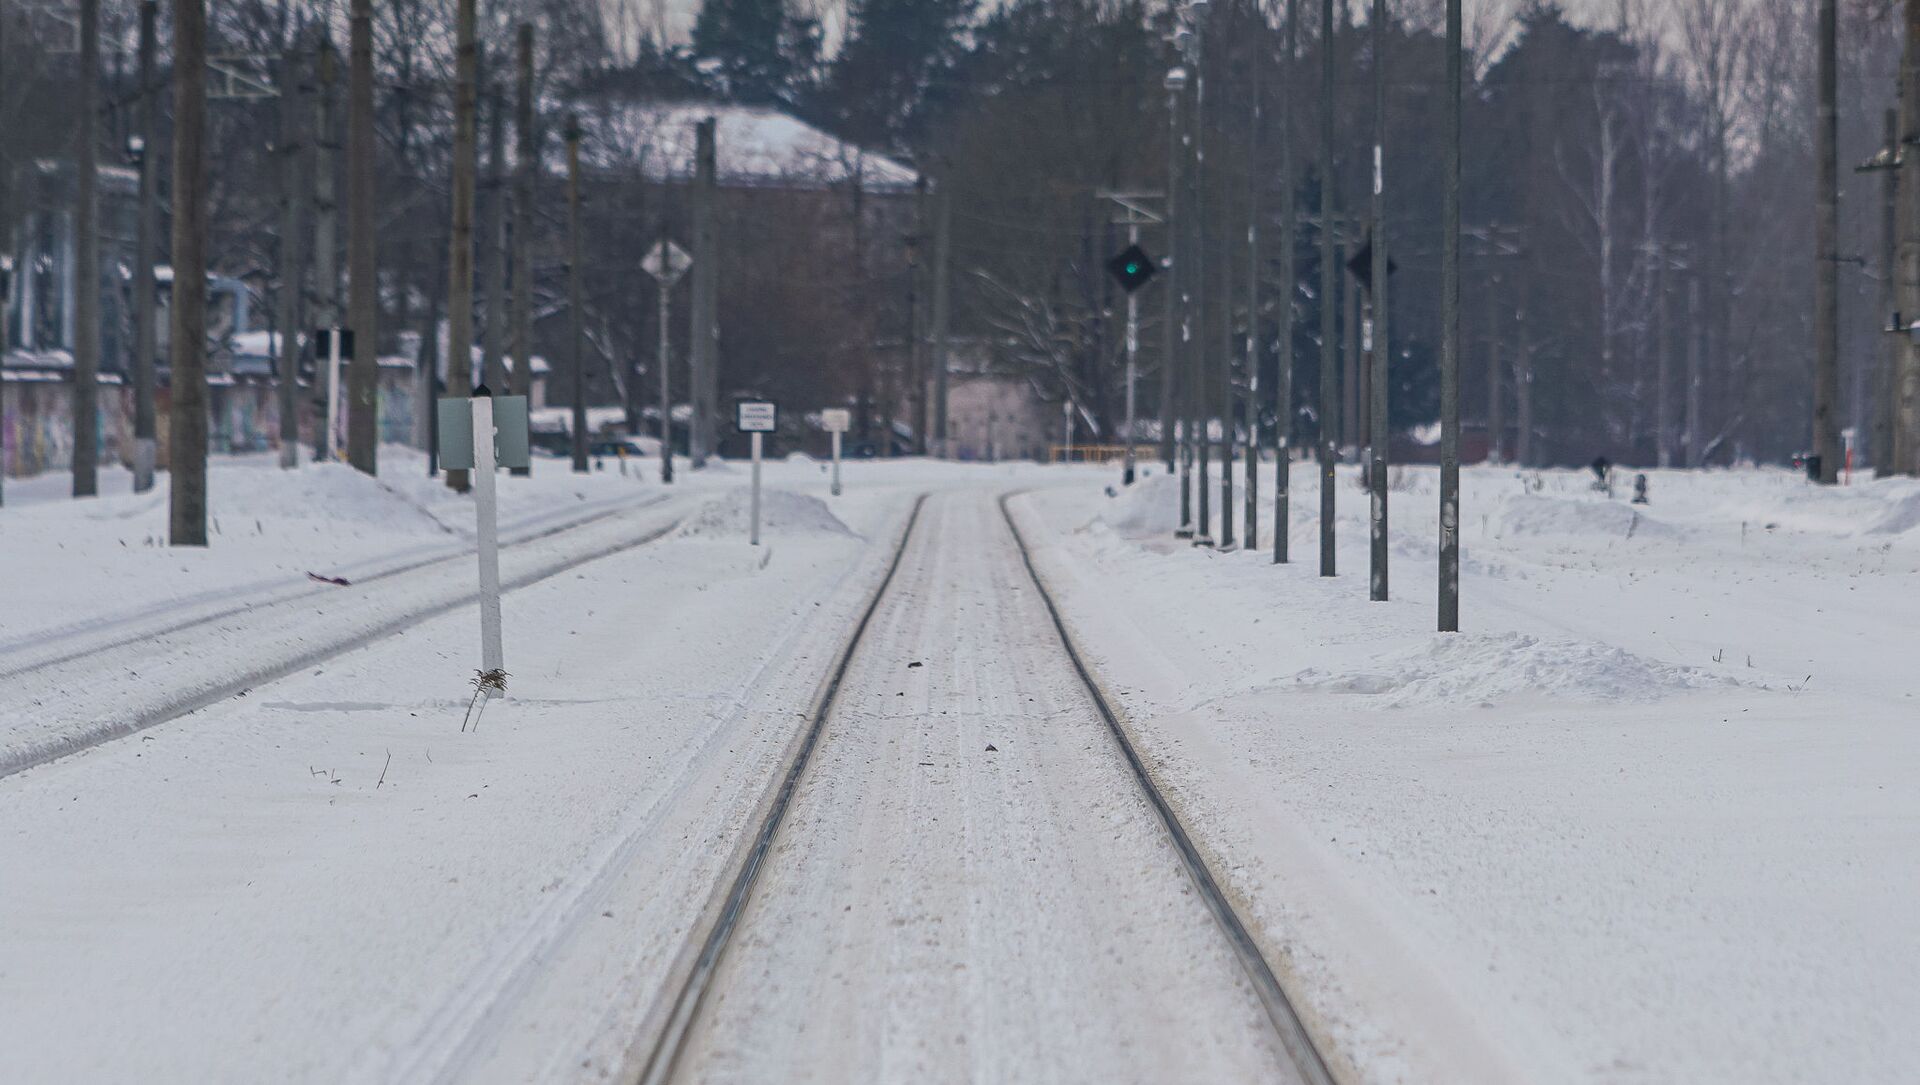 Железнодорожные пути, занесенные снегом - Sputnik Латвия, 1920, 04.02.2021